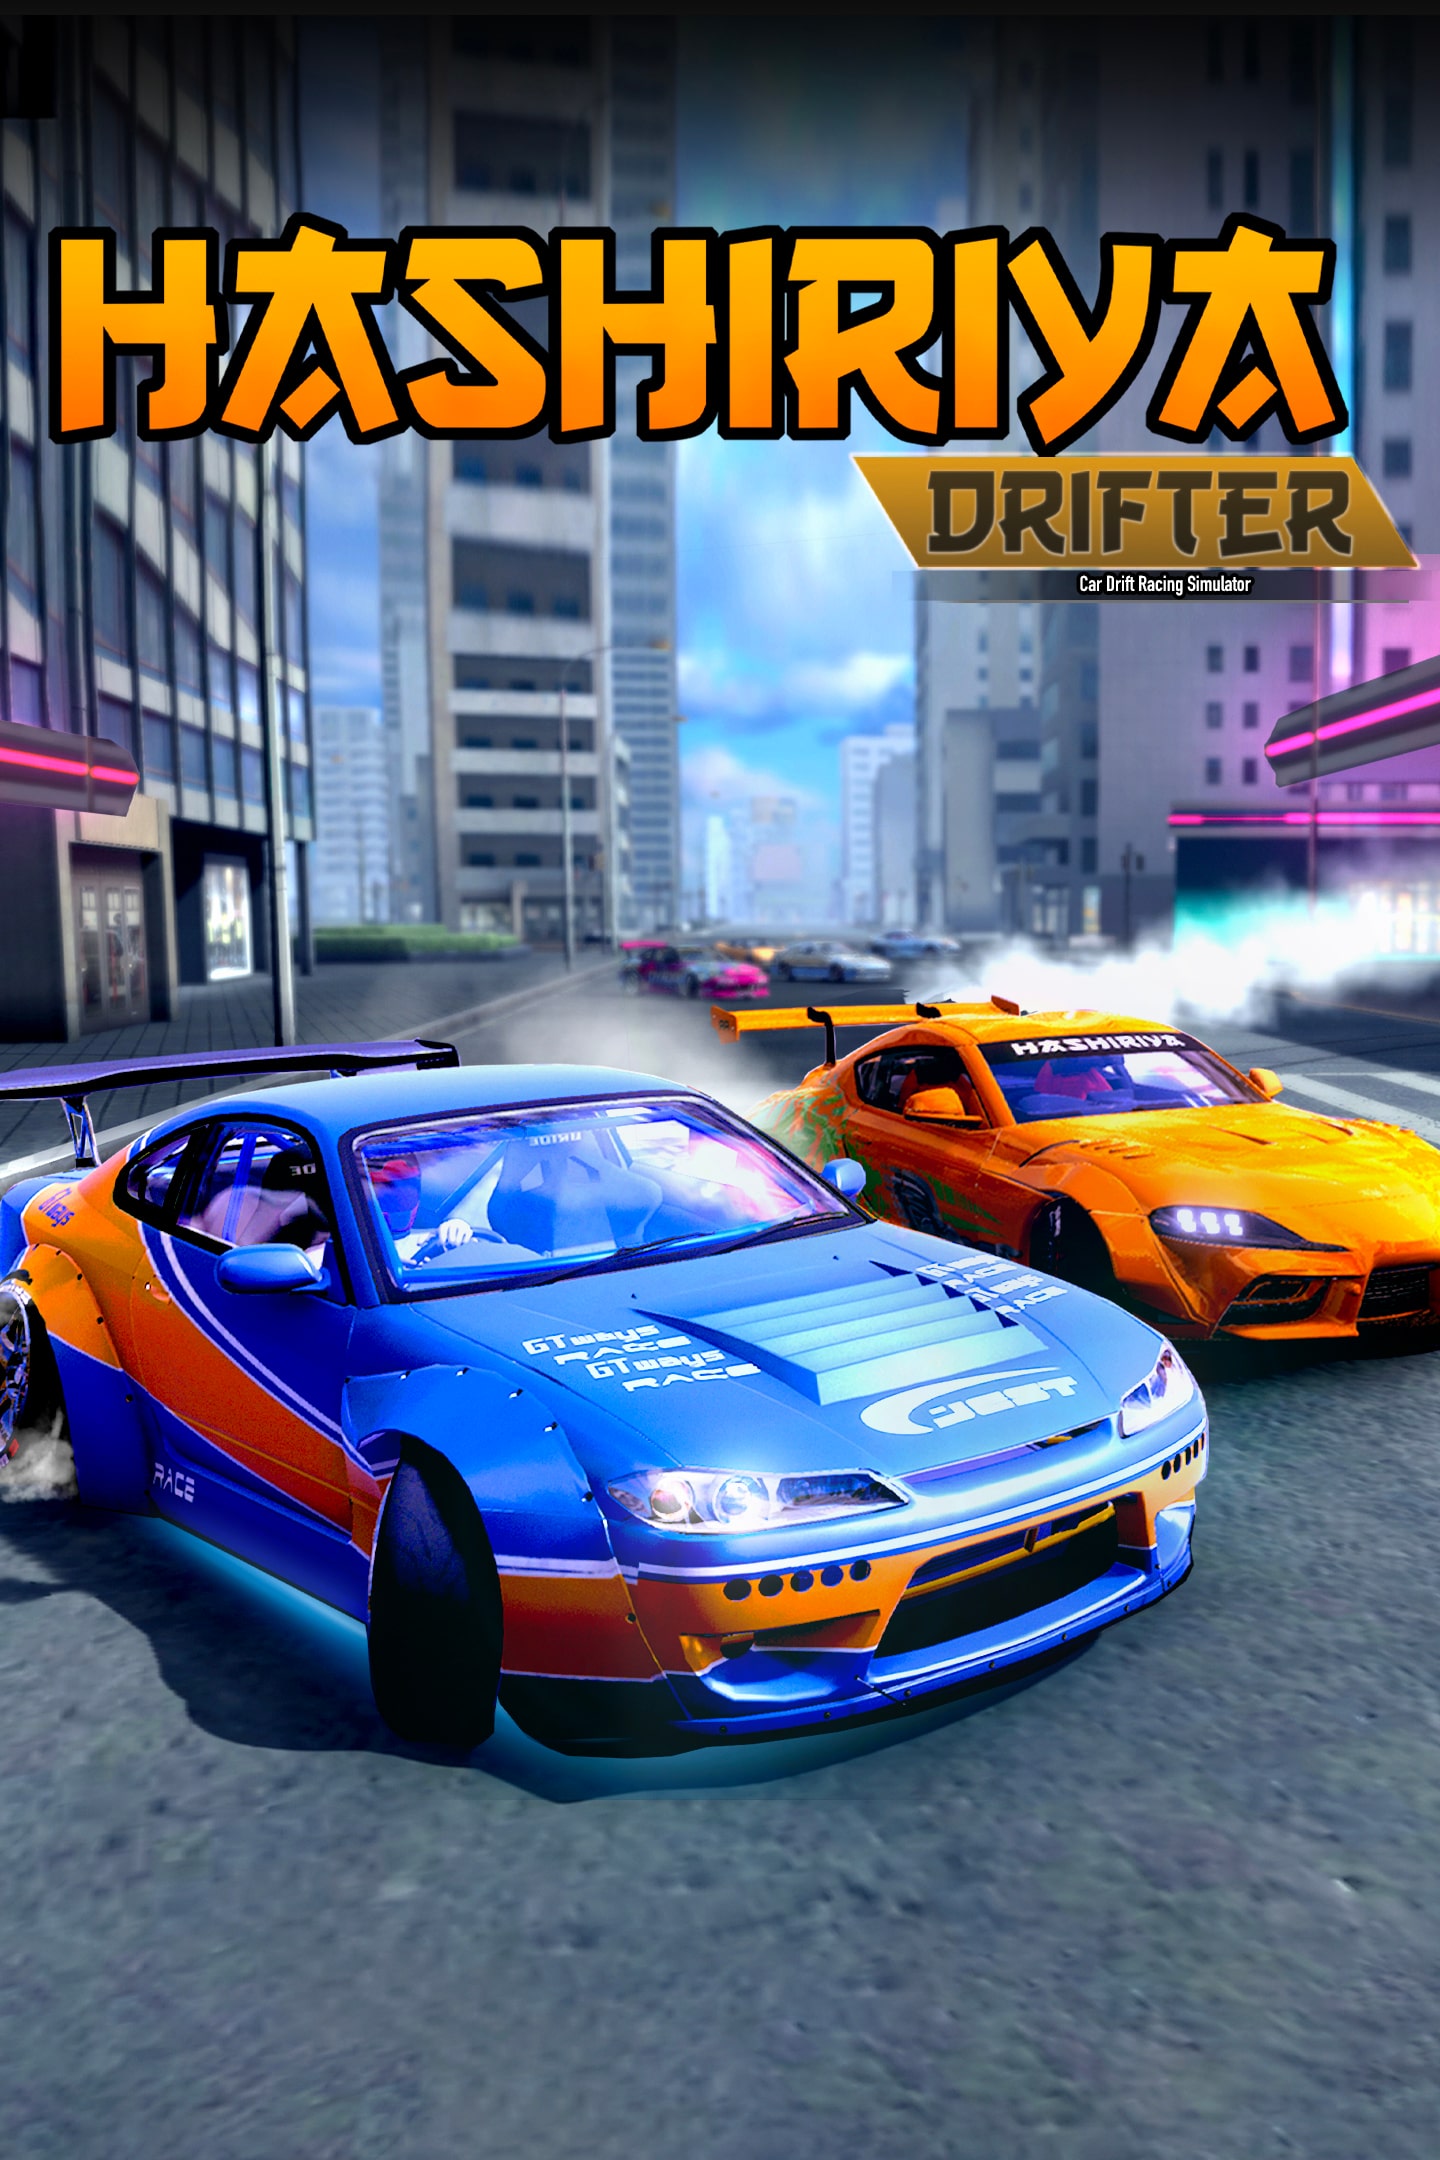 App Hashiriya Drifter - Car Games Android game 2022 